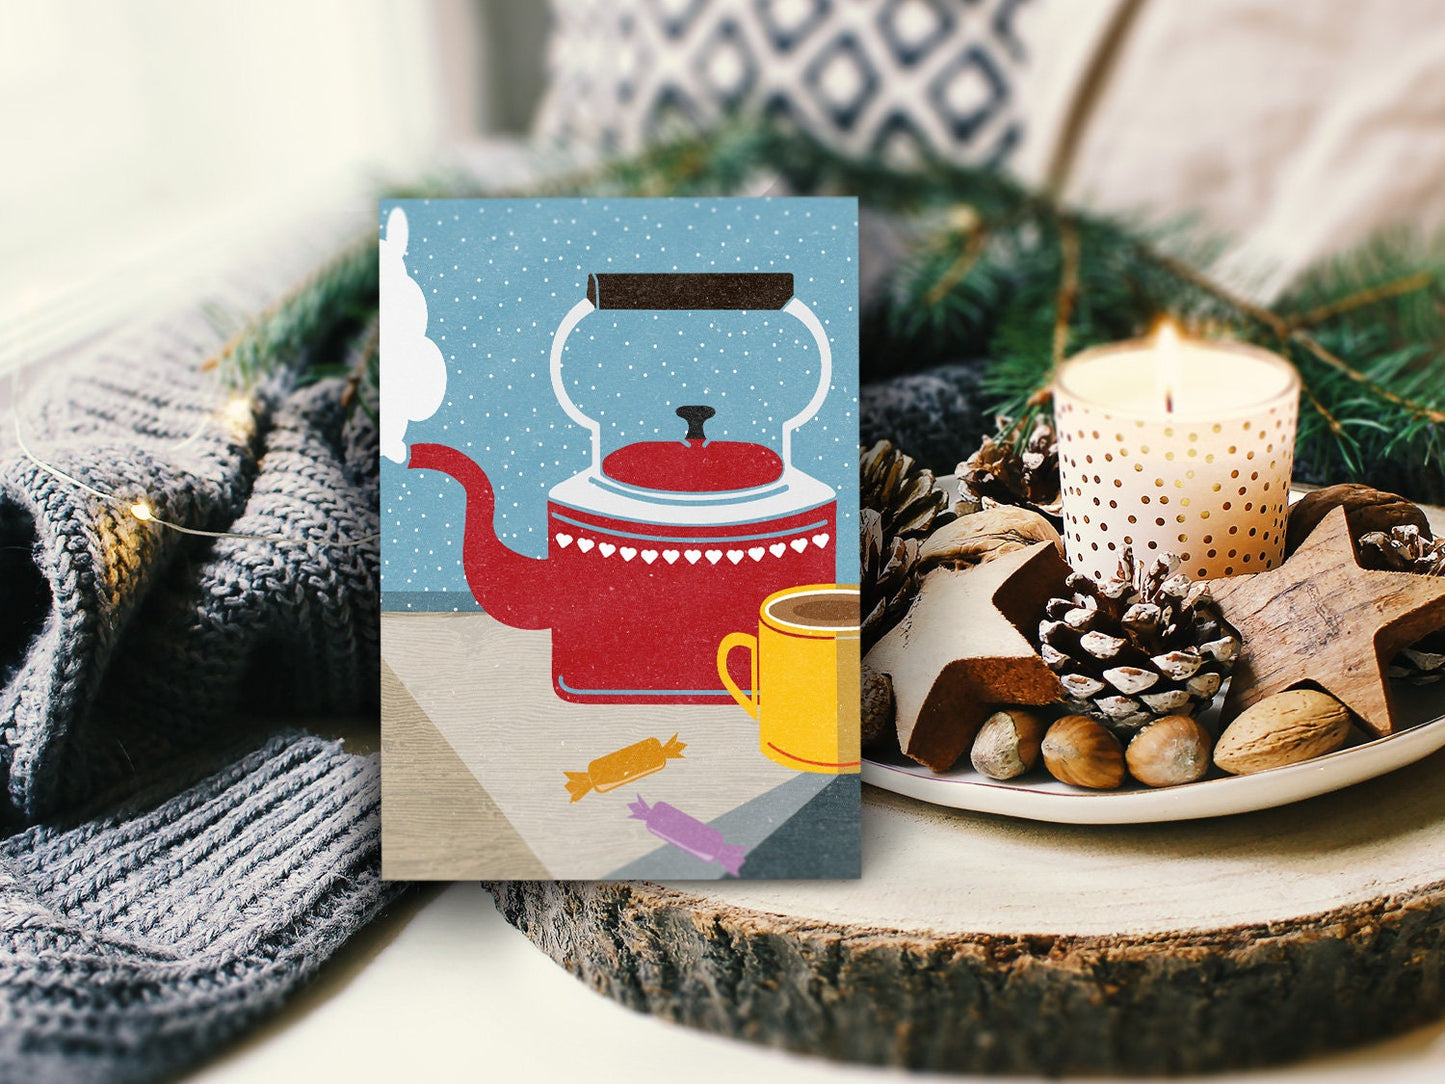 Winter-Grußkarte ›Tee‹ / Klappkarte, Weihnachten, Frohes Fest, Frohe Weihnachten, Merry X-mas, winterlich, romantisch, retro